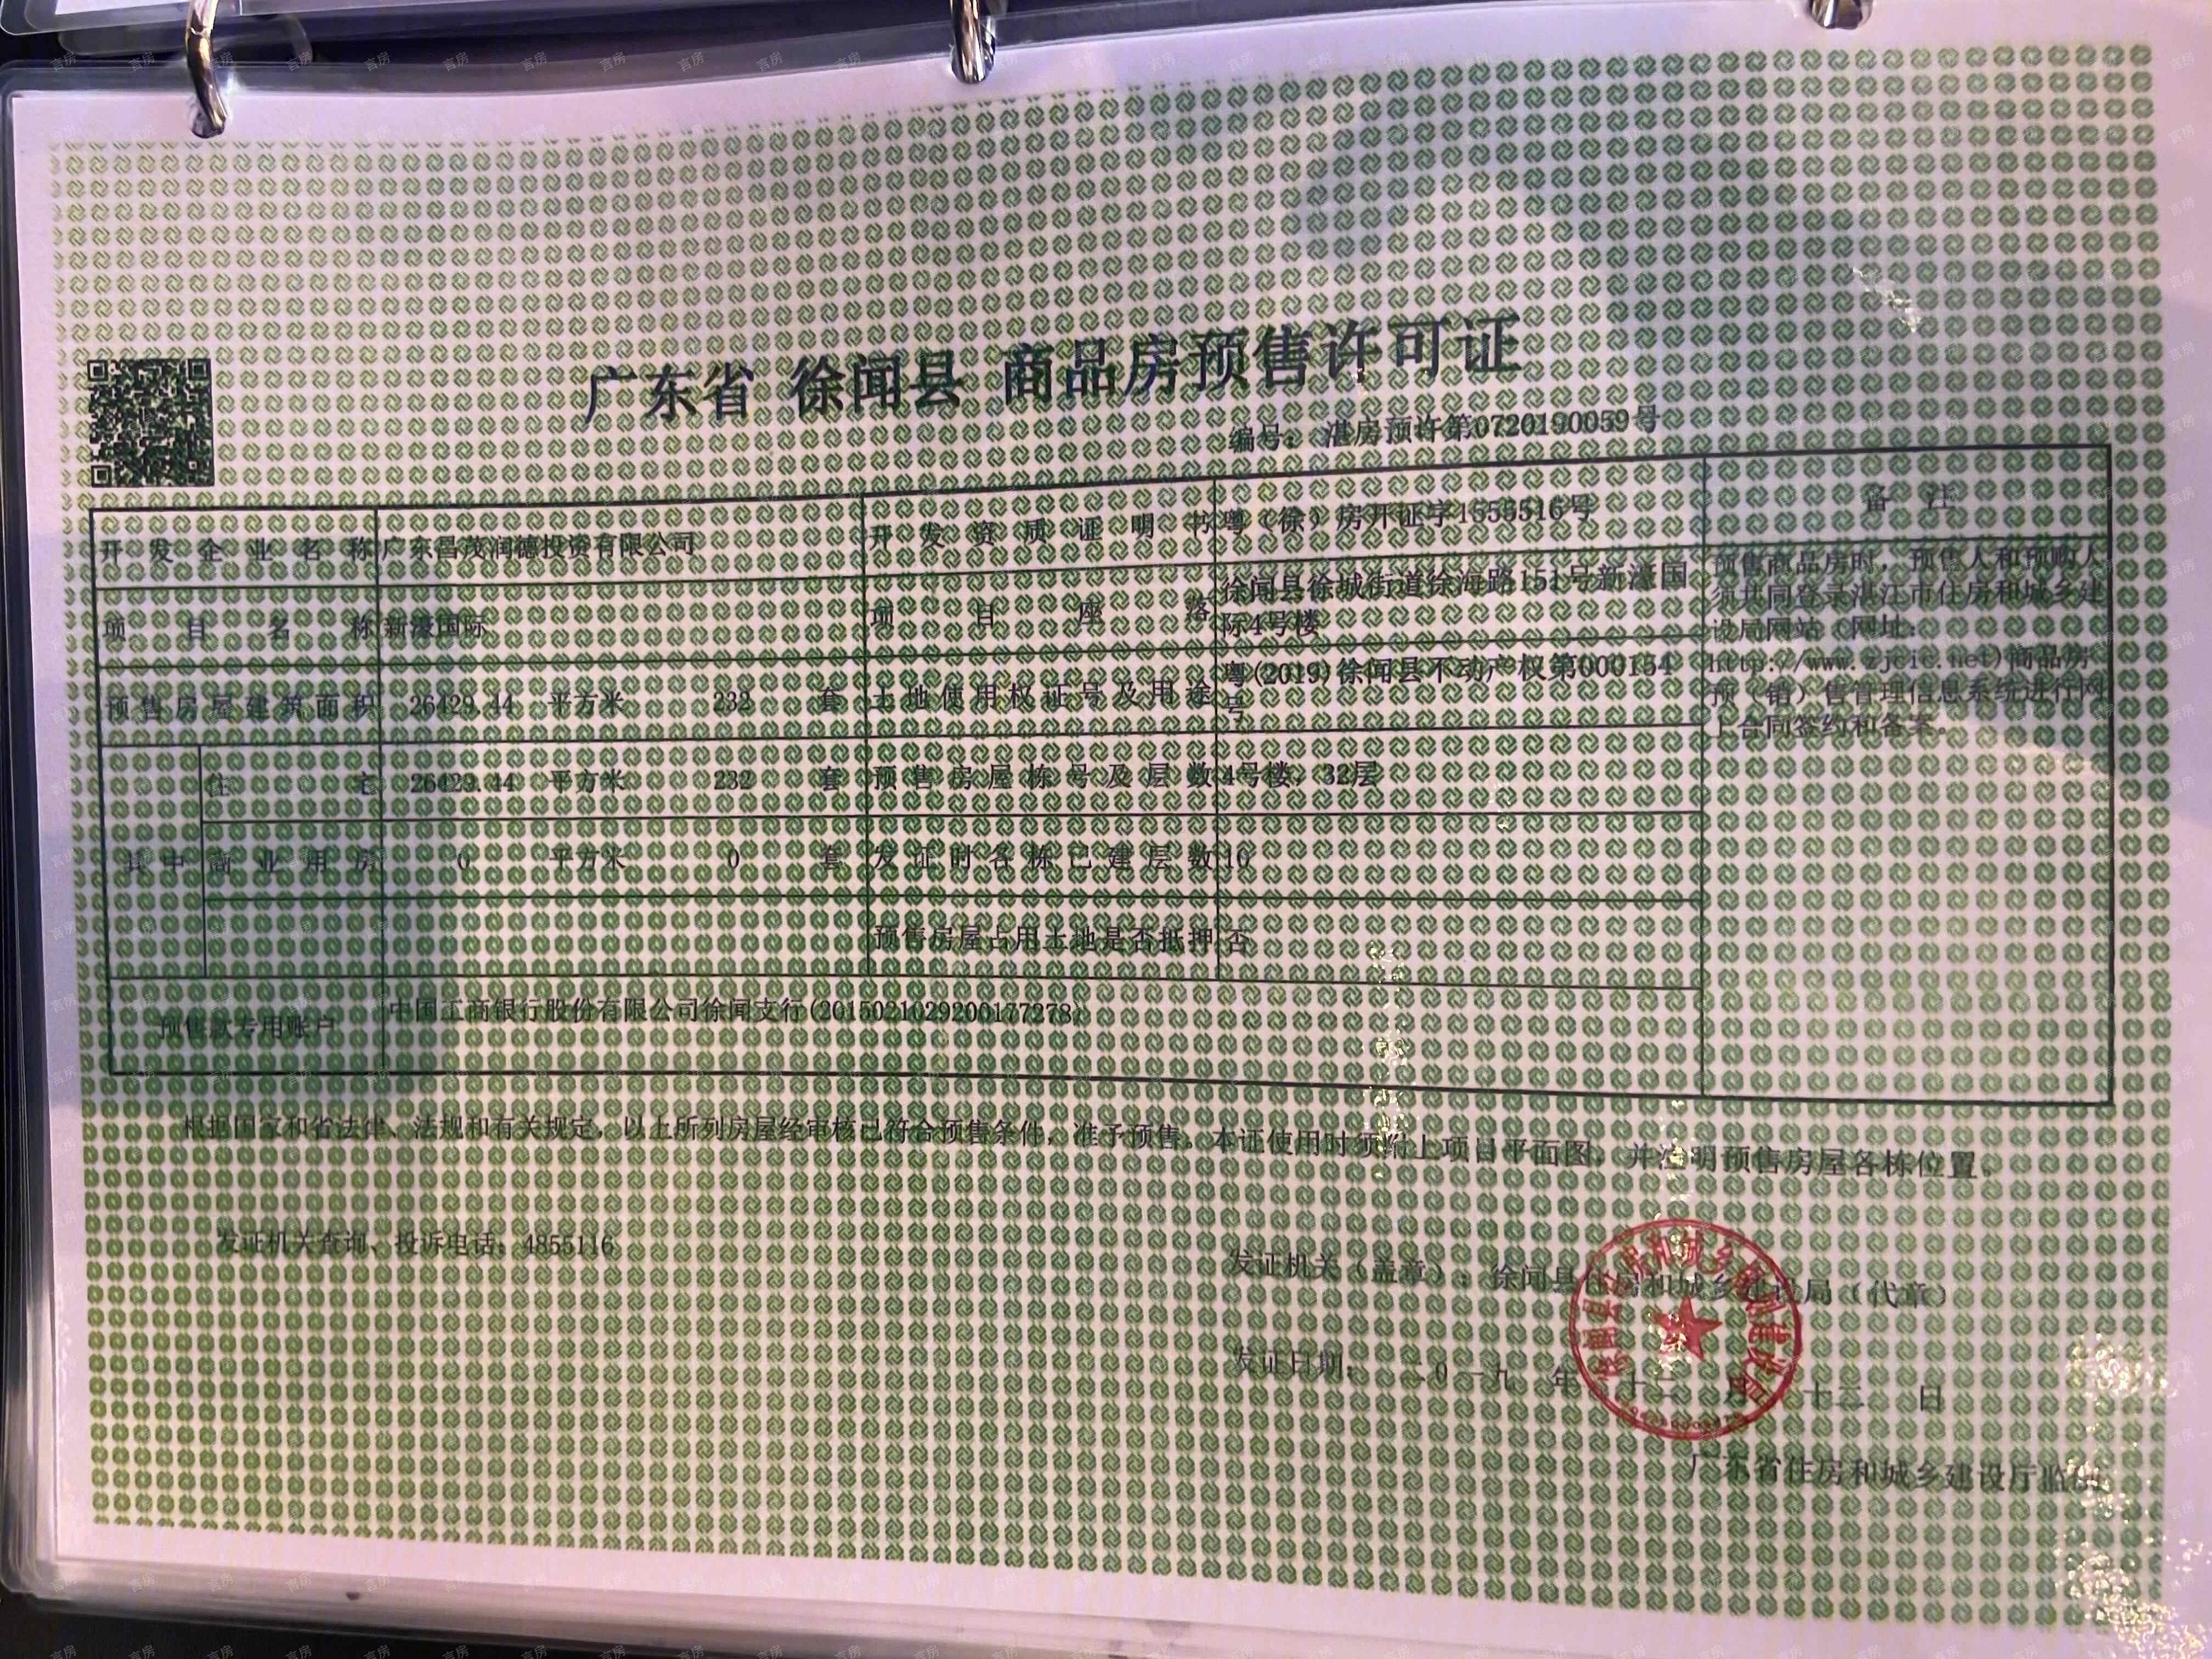 昌茂·新濠国际开发商营业执照